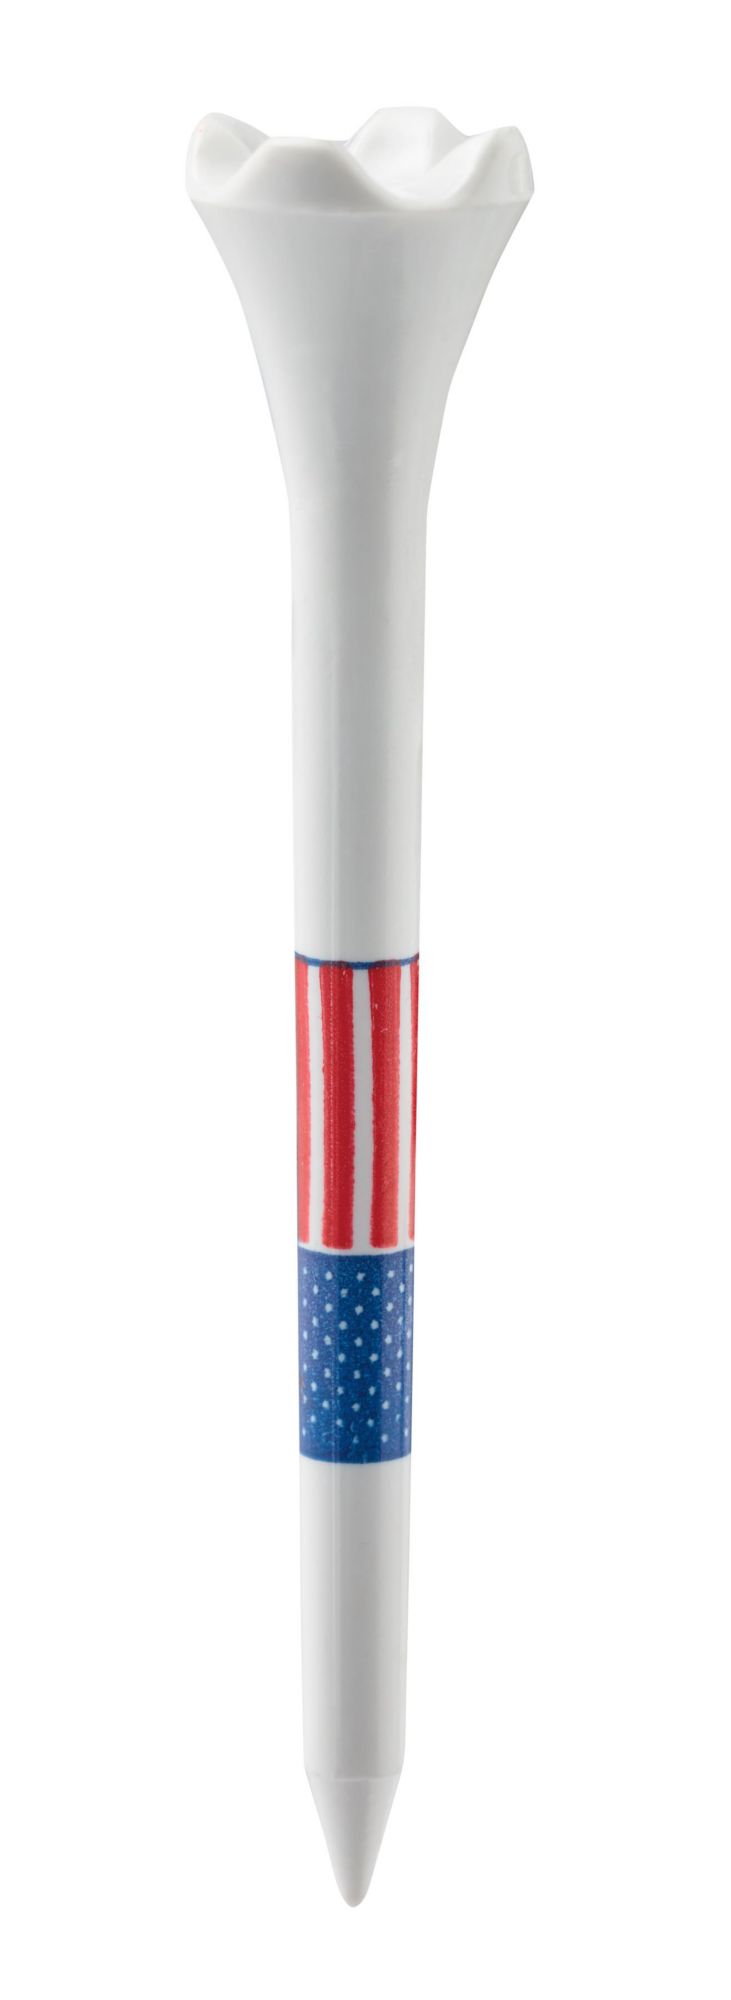 Pride 3.25'' American Flag Golf Tees - 33 Pack